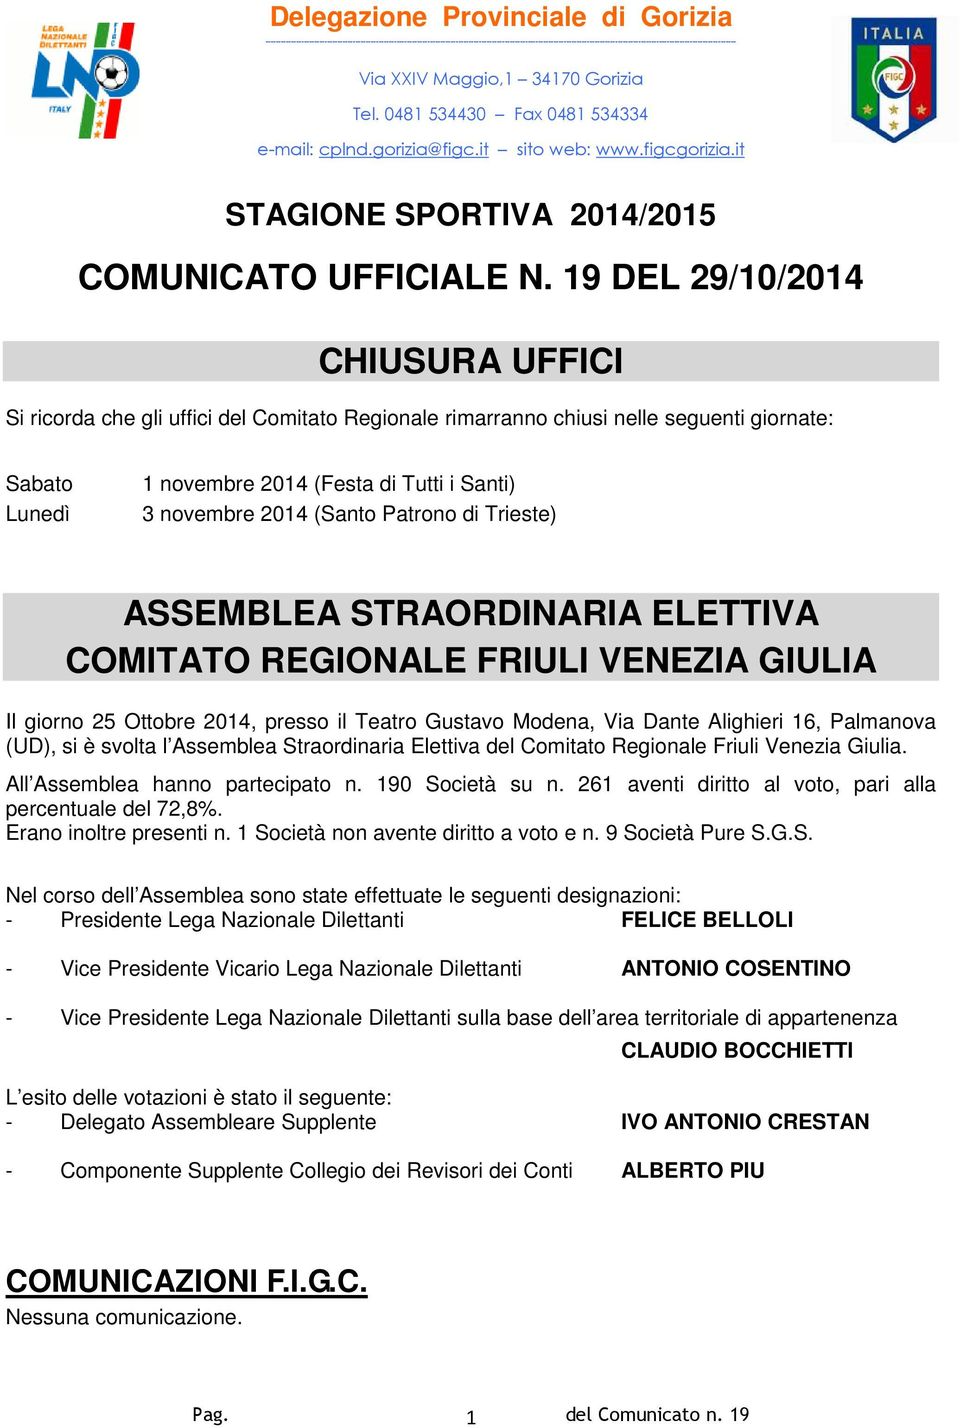 Maggio,1 34170 Gorizia Tel. 0481 534430 Fax 0481 534334 e-mail: cplnd.gorizia@figc.it sito web: www.figcgorizia.it STAGIONE SPORTIVA 2014/2015 COMUNICATO UFFICIALE N.